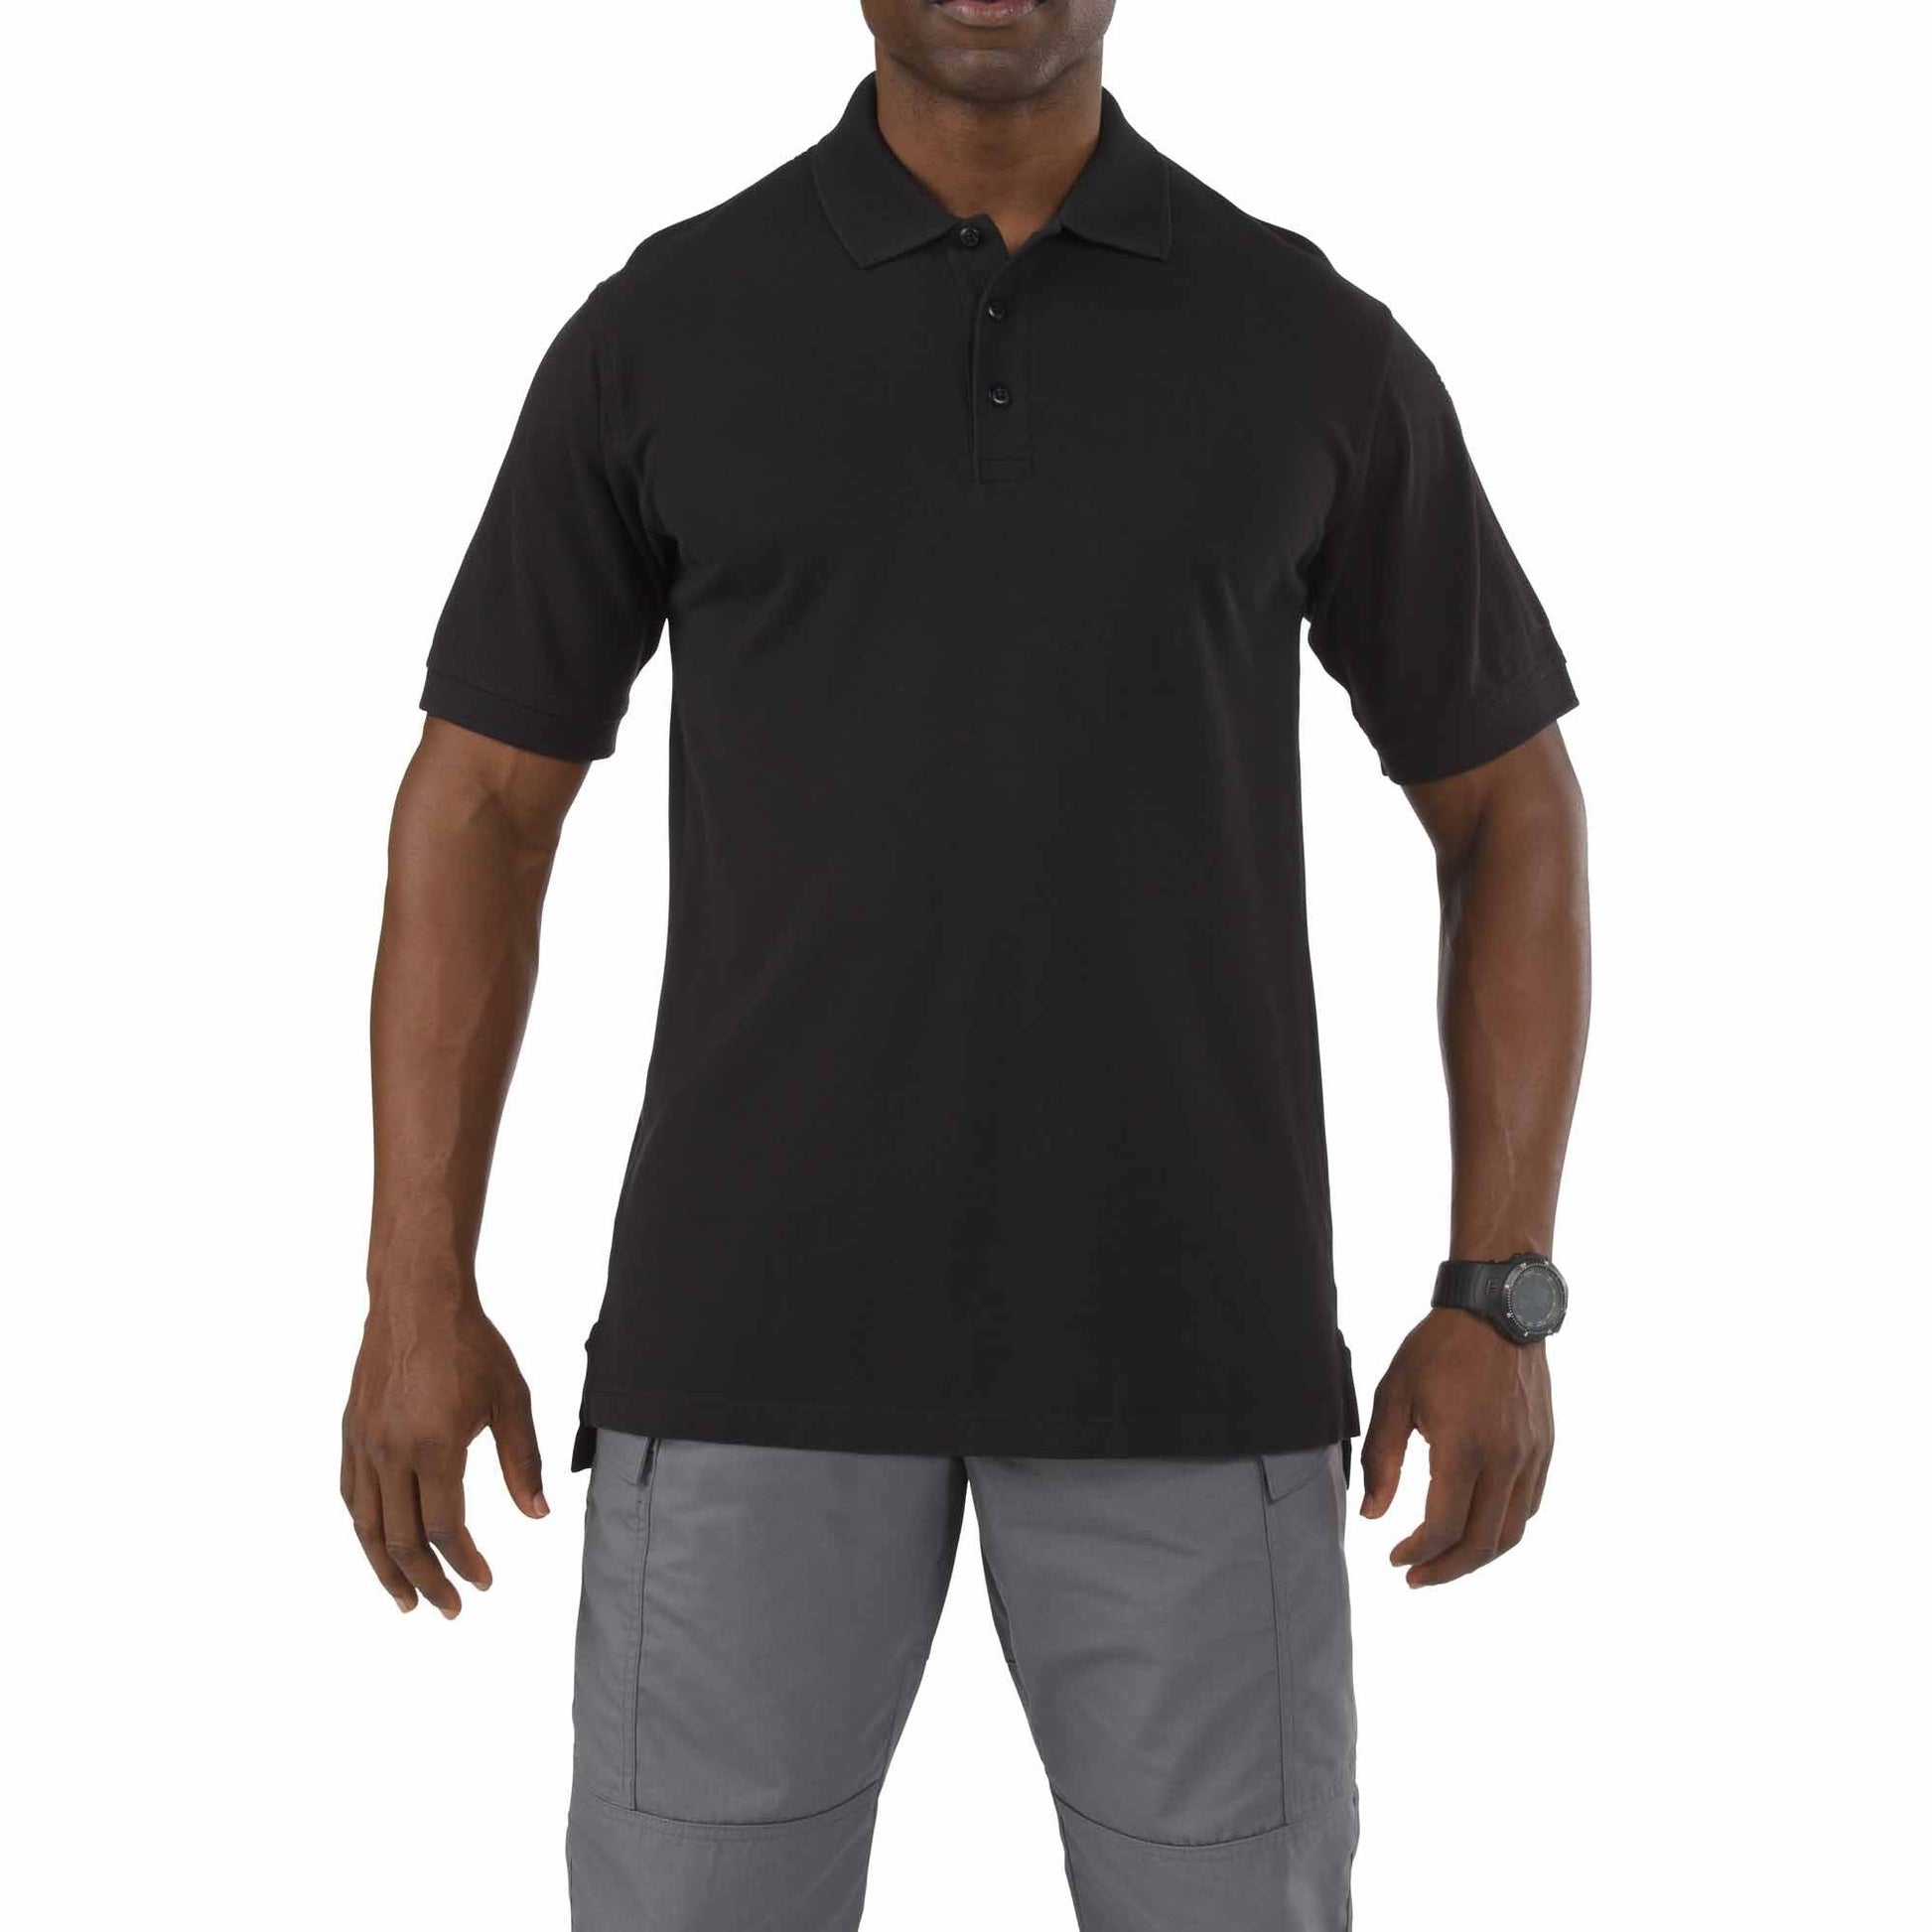 5.11 Tactical Professional Short Sleeve Polo Shirt Black Tactical Distributors Ltd New Zealand